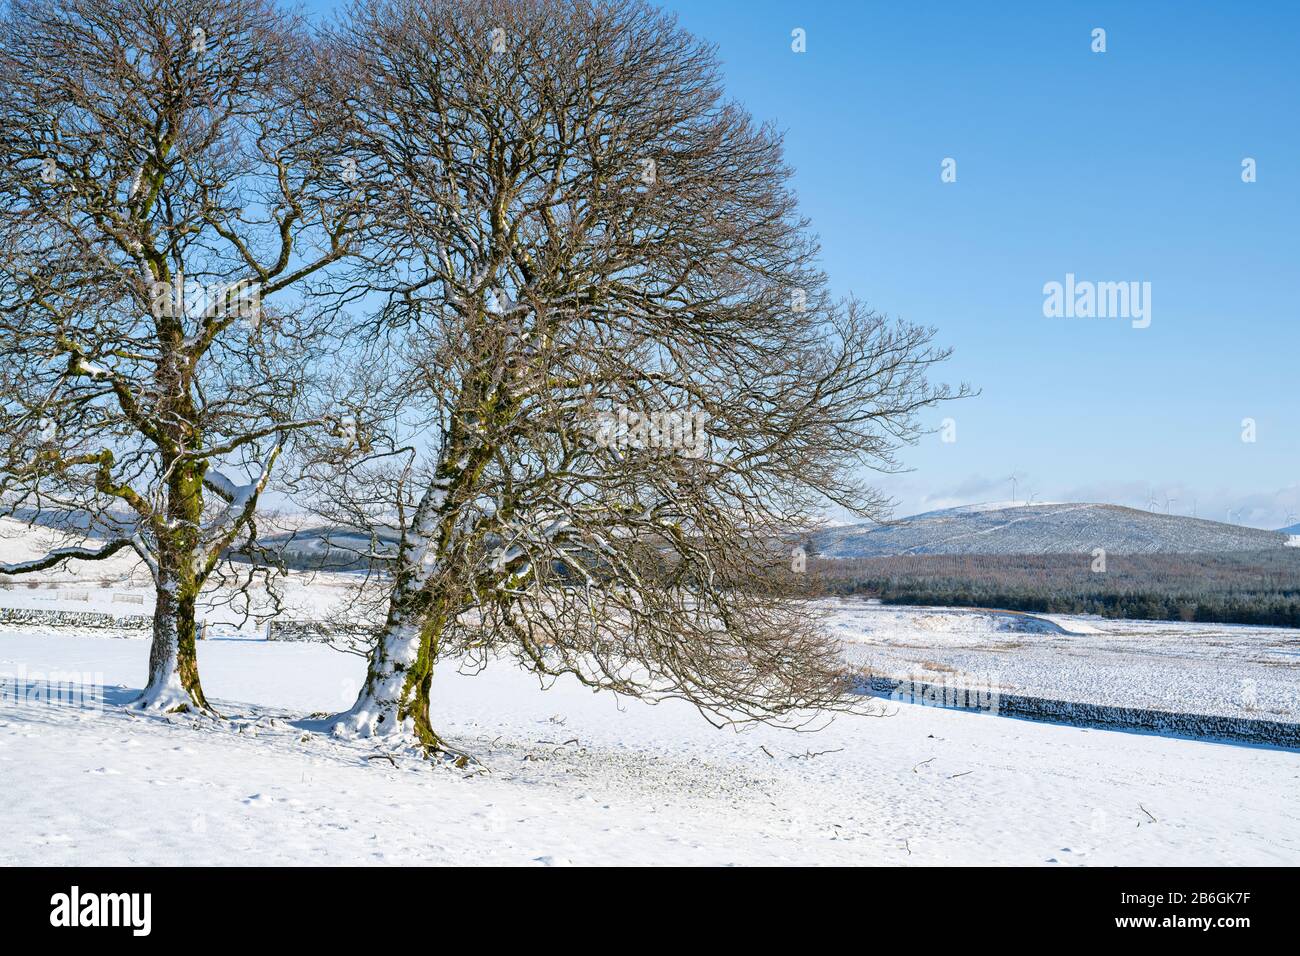 Alberi invernali nella neve nella campagna scozzese. Dumfries e Galloway, confini scozzesi, Scozia Foto Stock